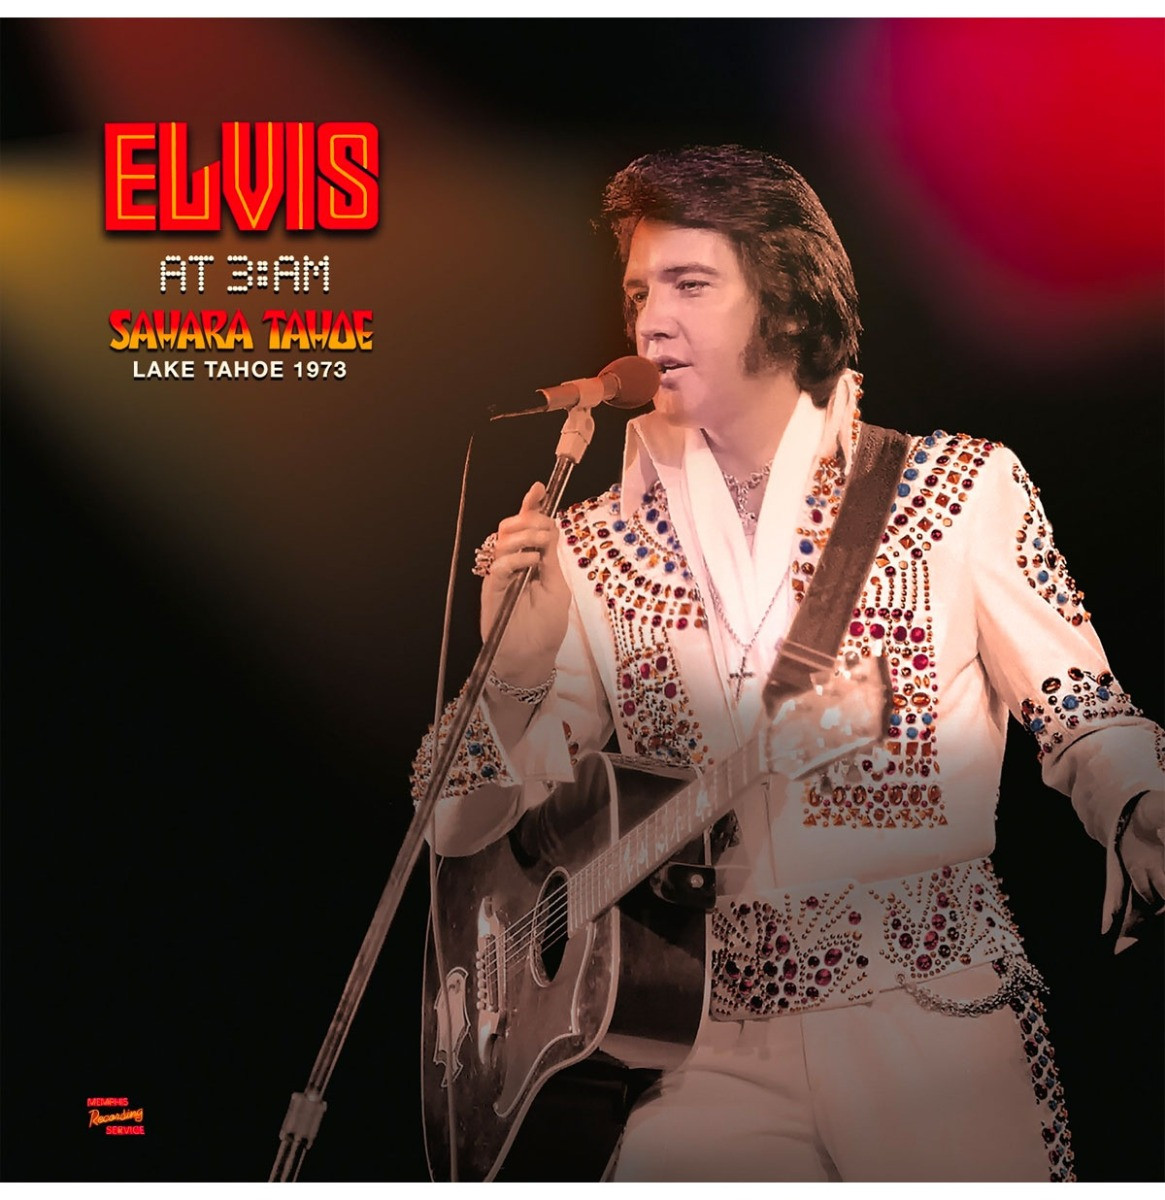 Elvis Presley - Elvis at 3:AM Sahara Tahoe Lake Tahoe 1973 CLEAR VINYL